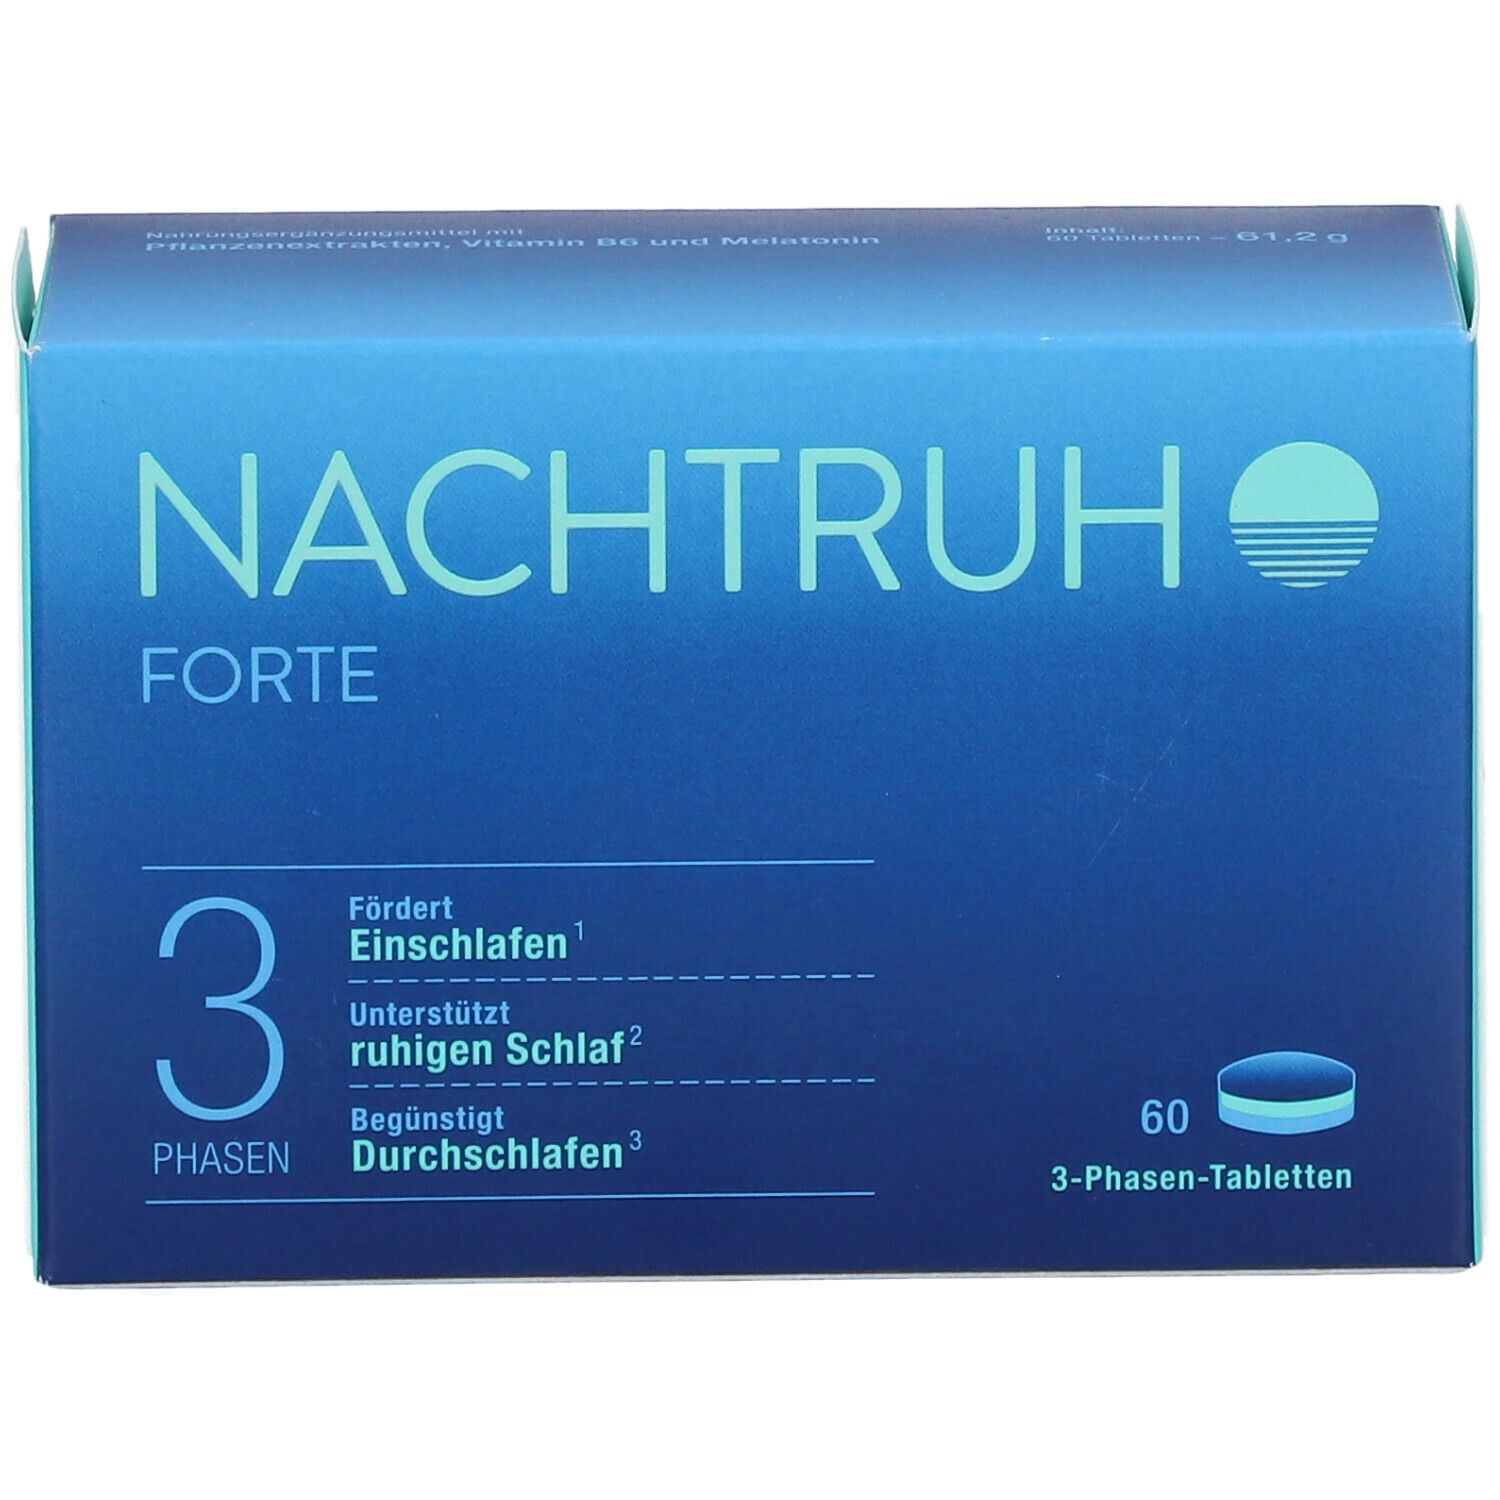 NACHTRUH Forte